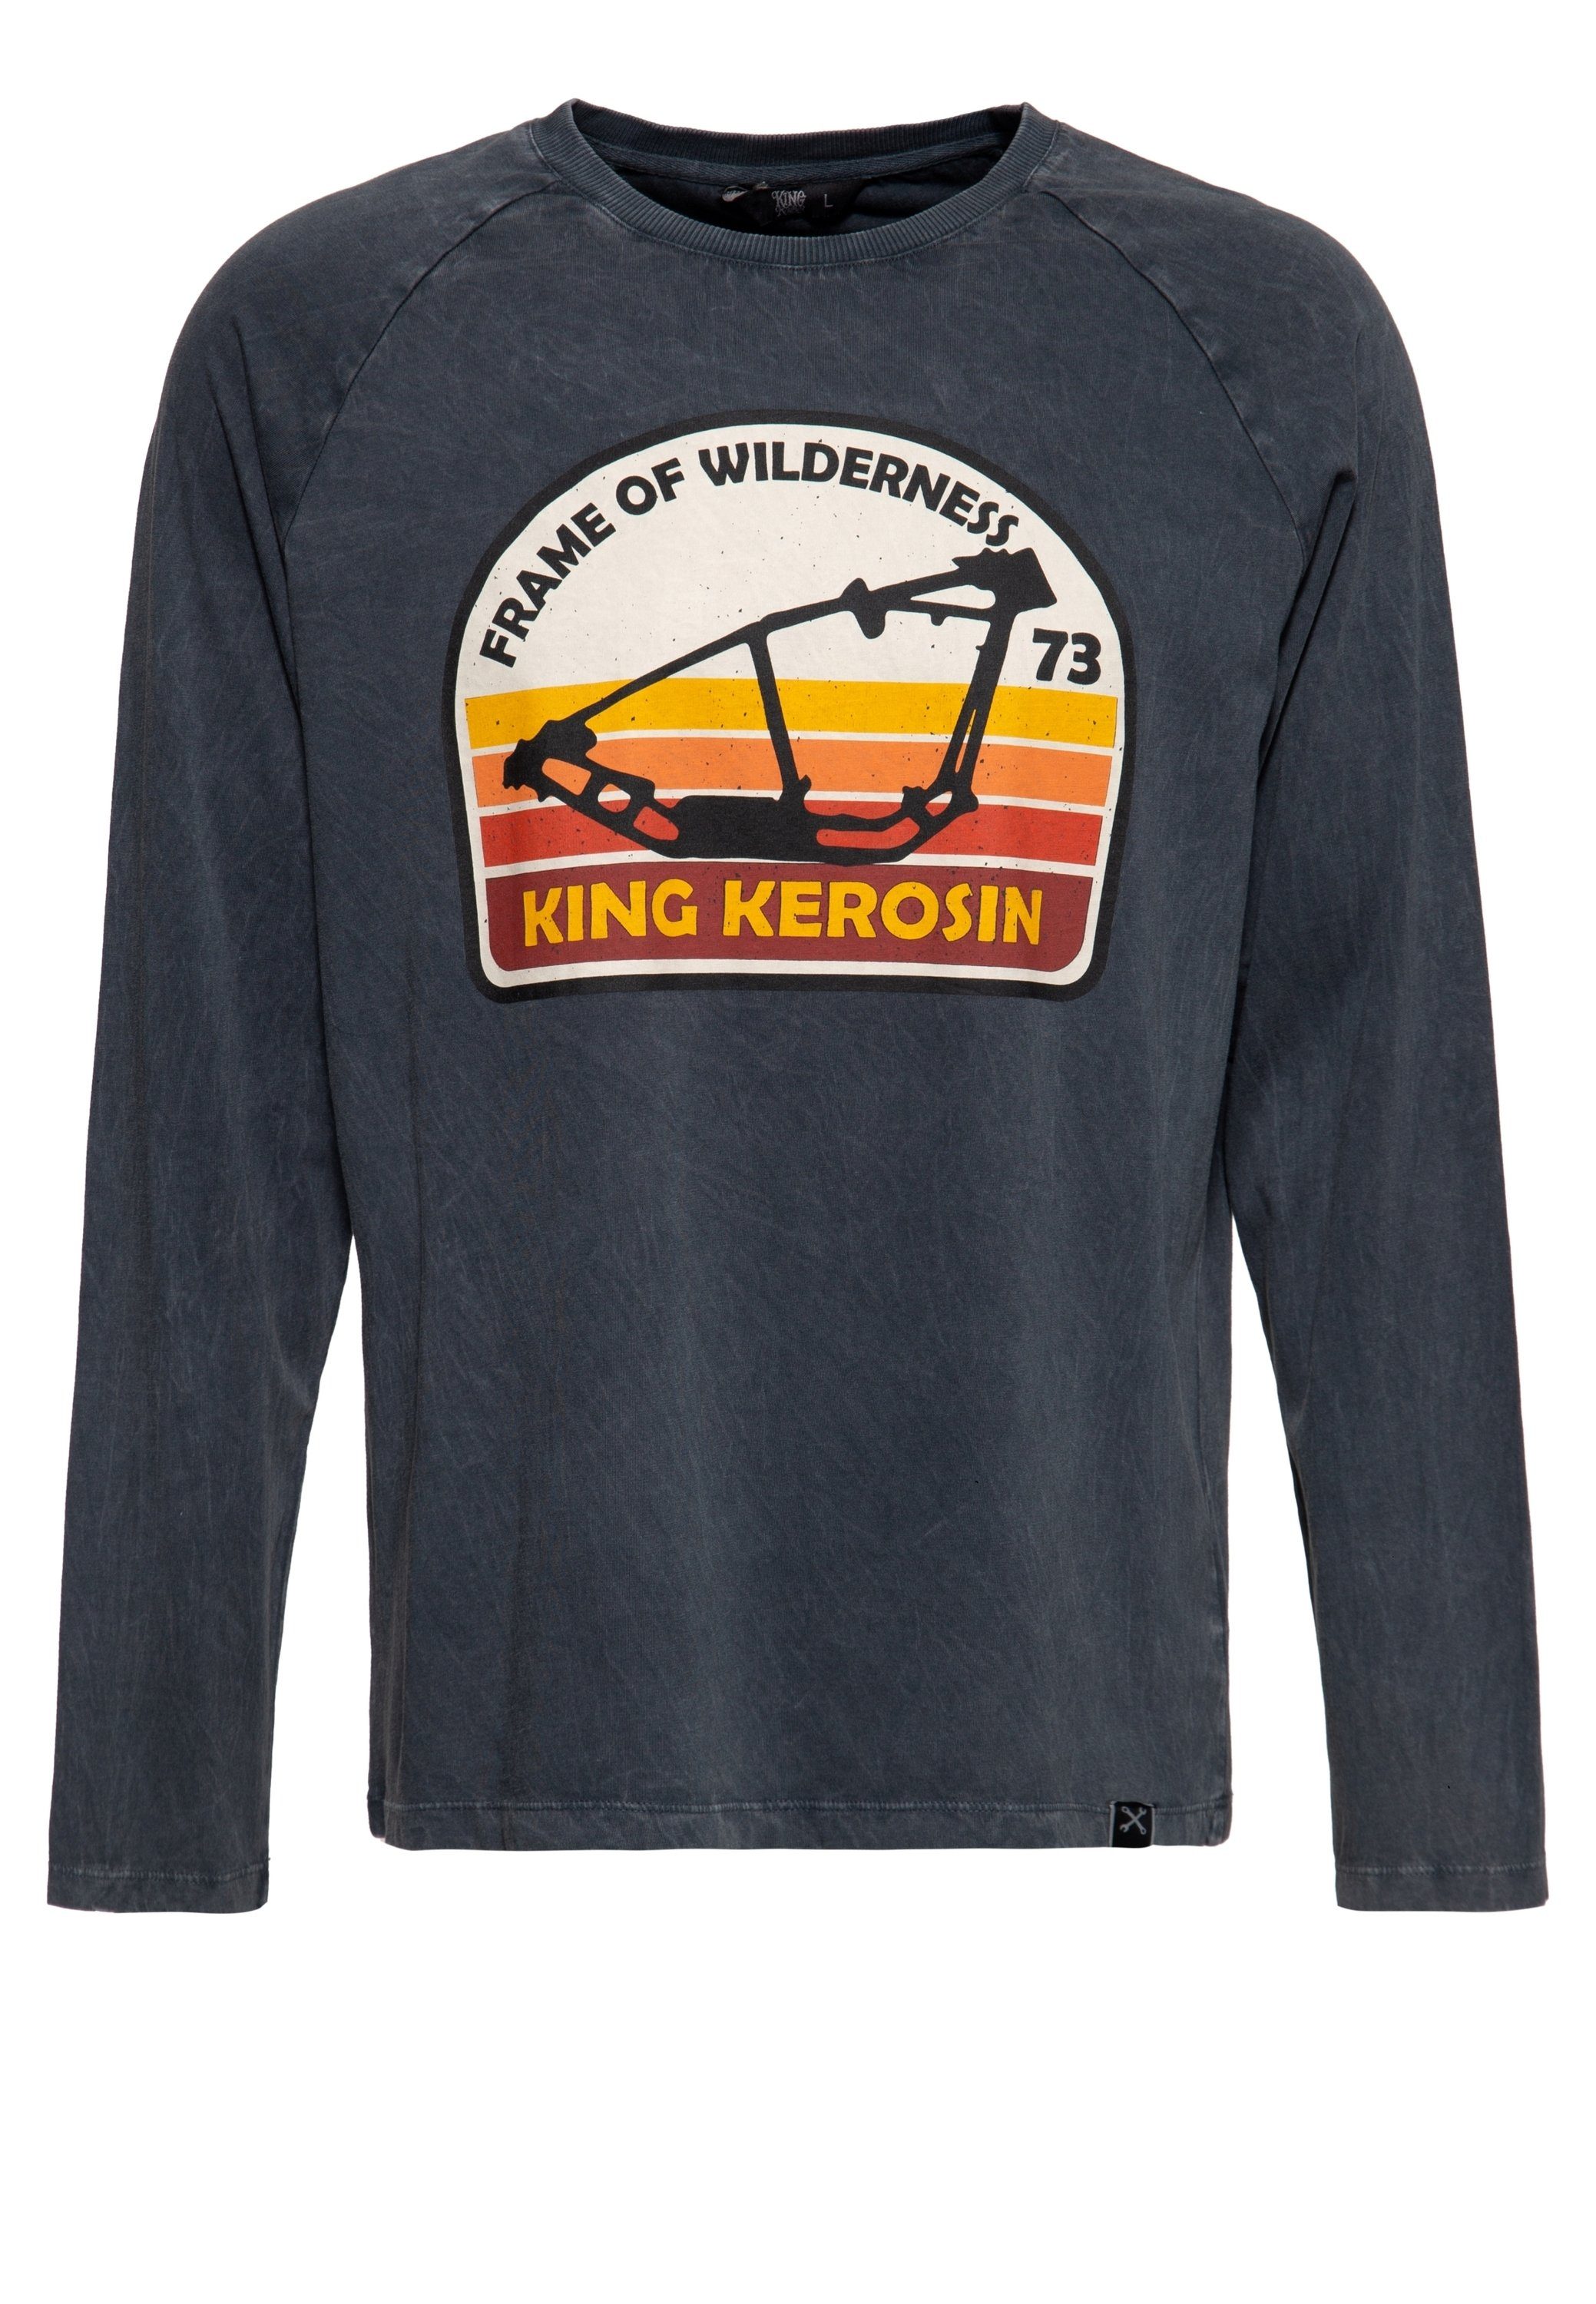 Herren Shirts KingKerosin Longsleeve Frame of Wilderness